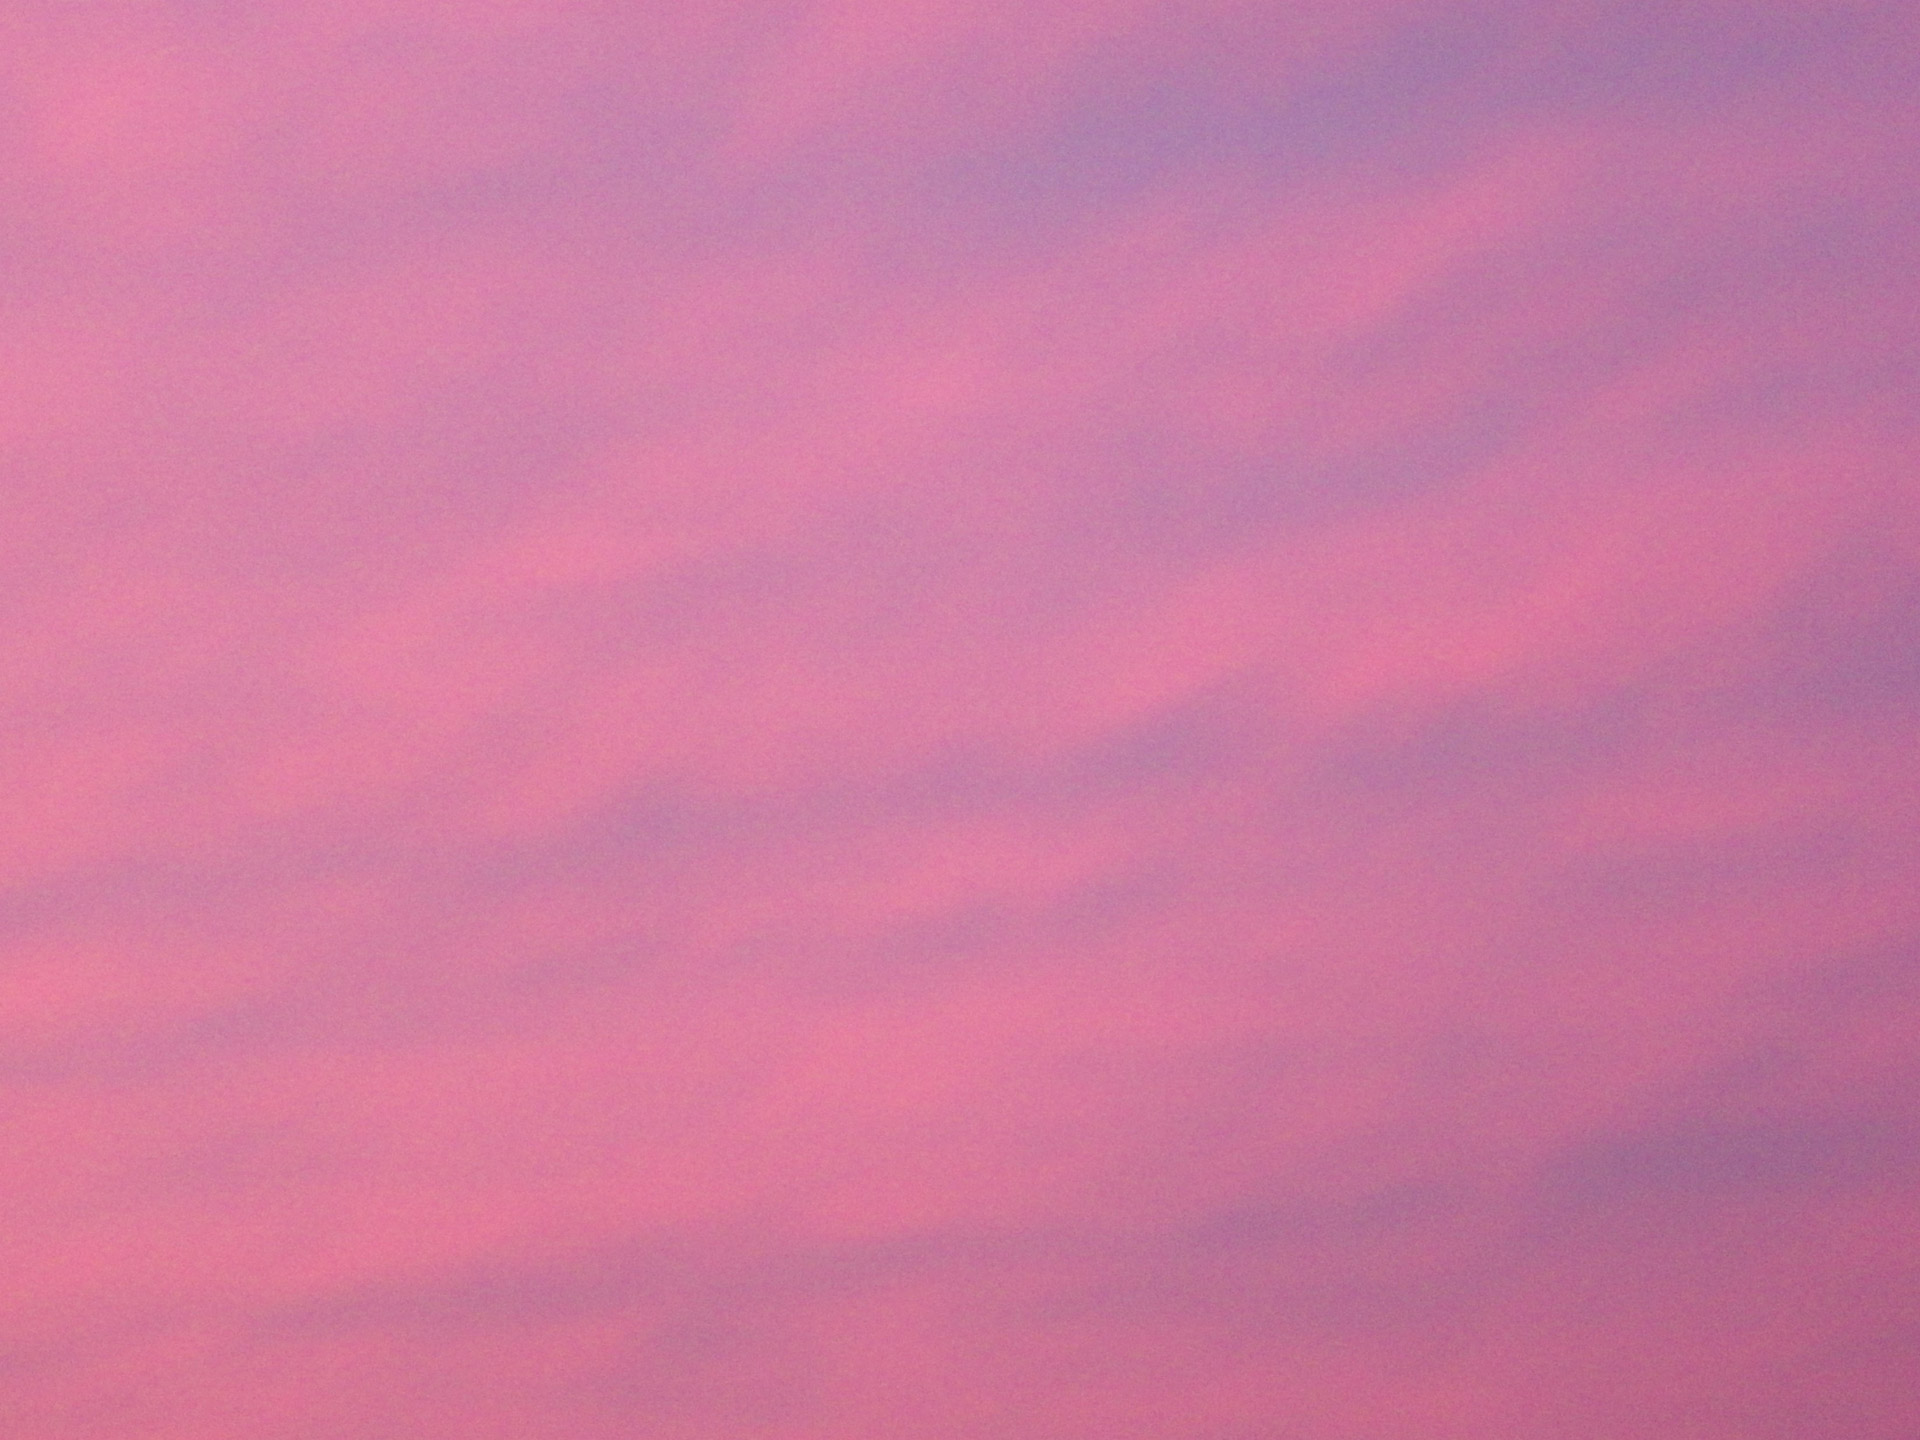 Pink Evening Sky